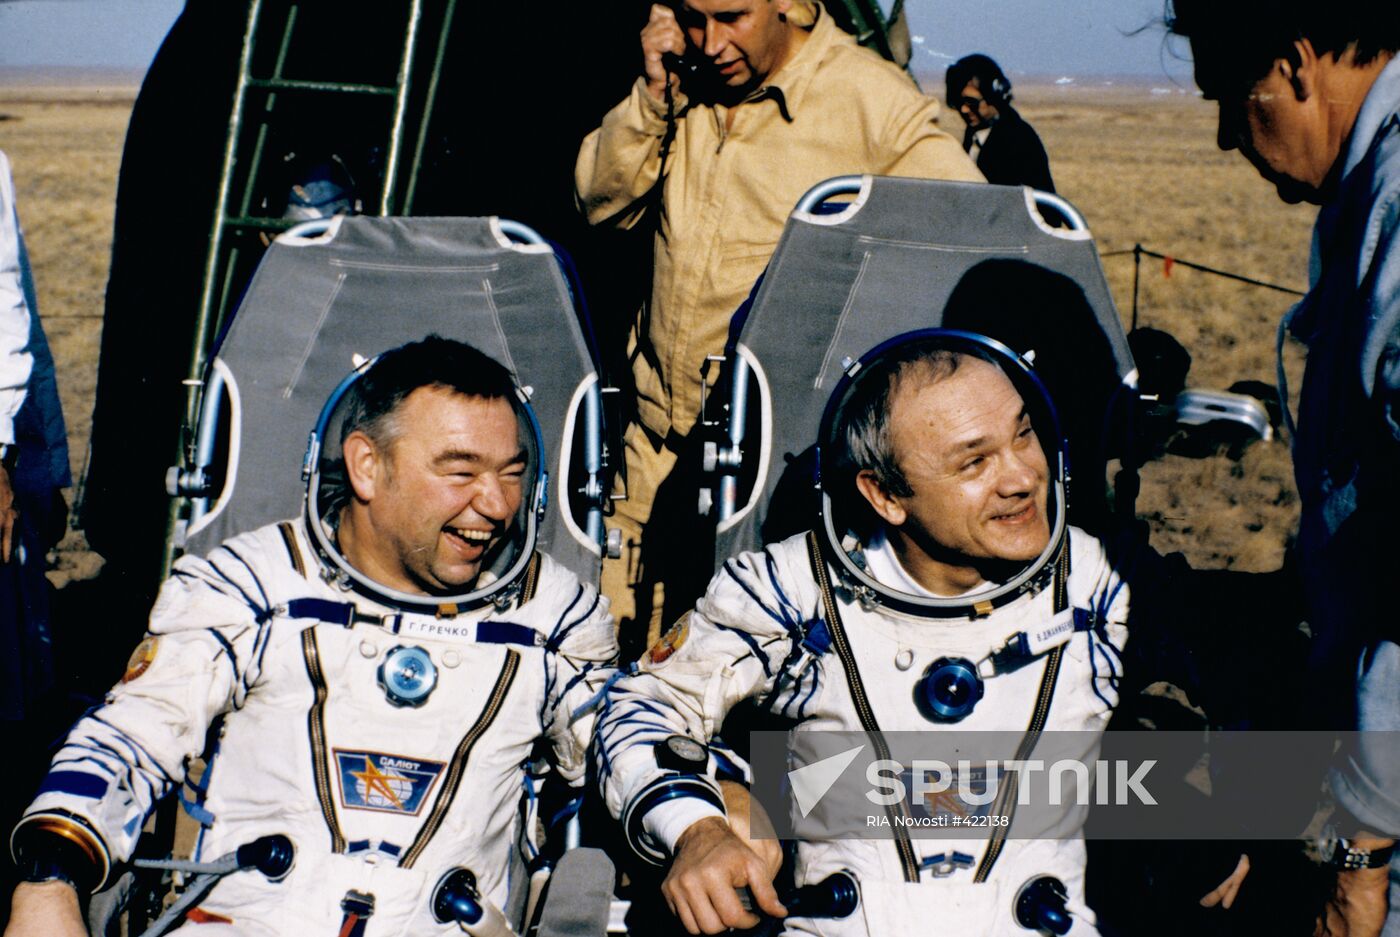 Pilot cosmonauts Vladimir Dzhanibekov and Georgy Grechko